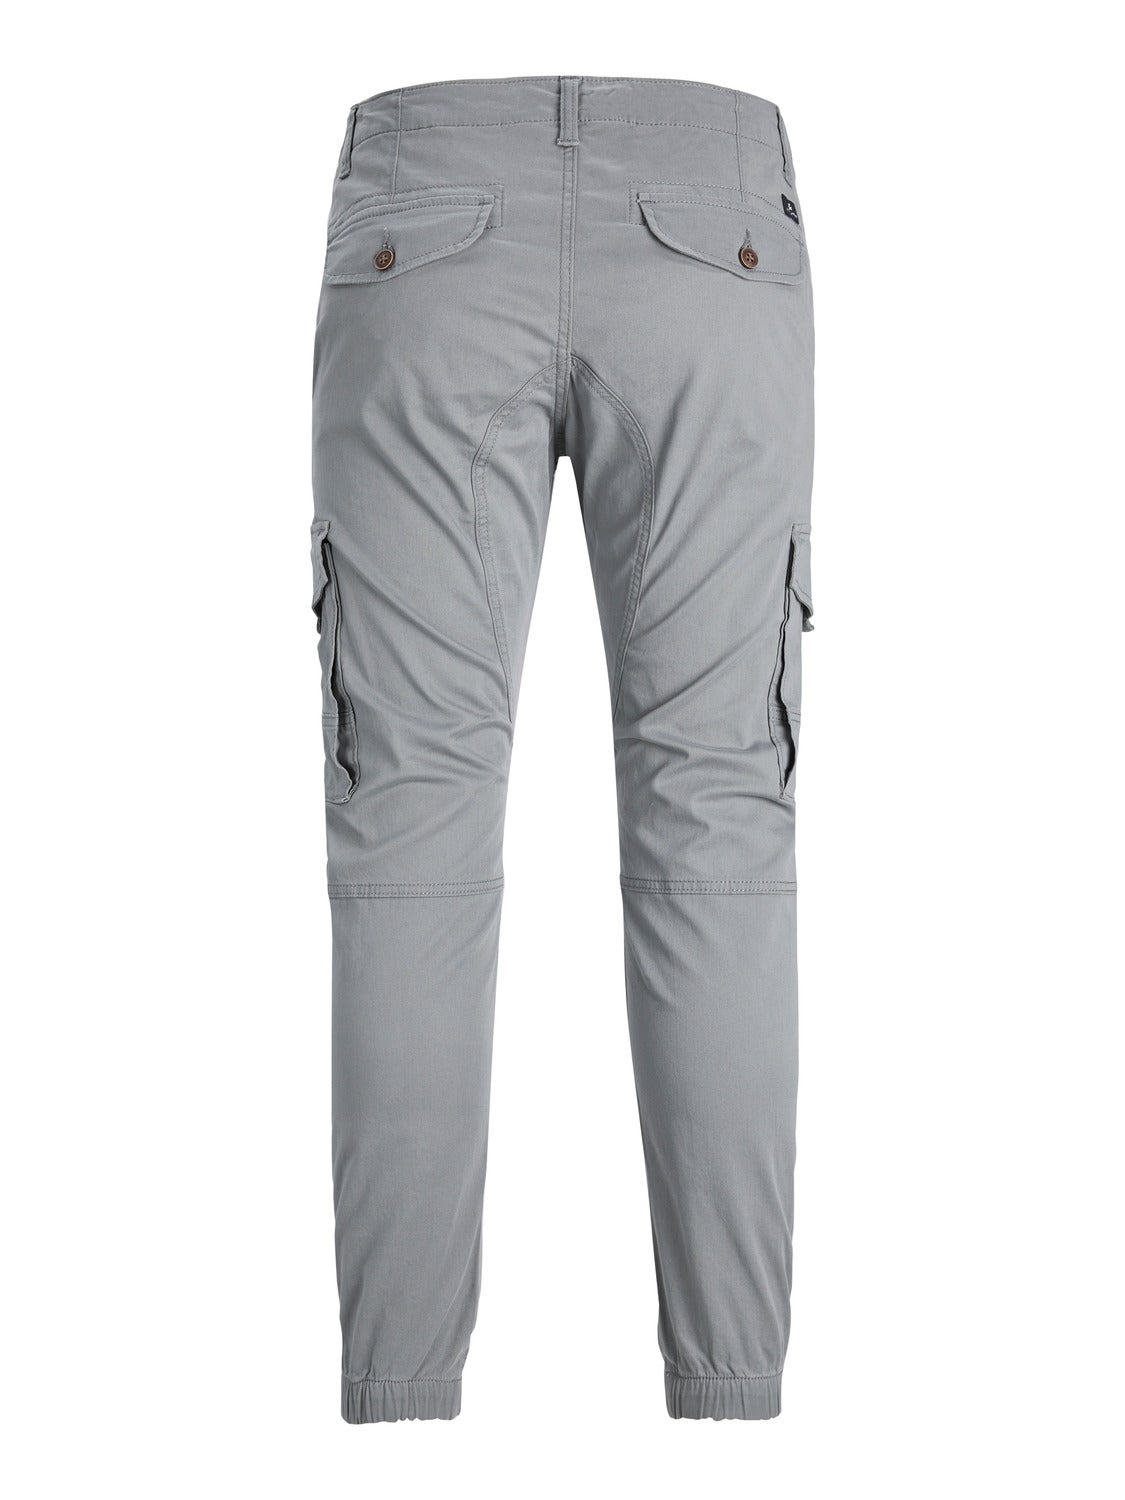 Buy Grey Trousers & Pants for Women by Broadstar Online | Ajio.com